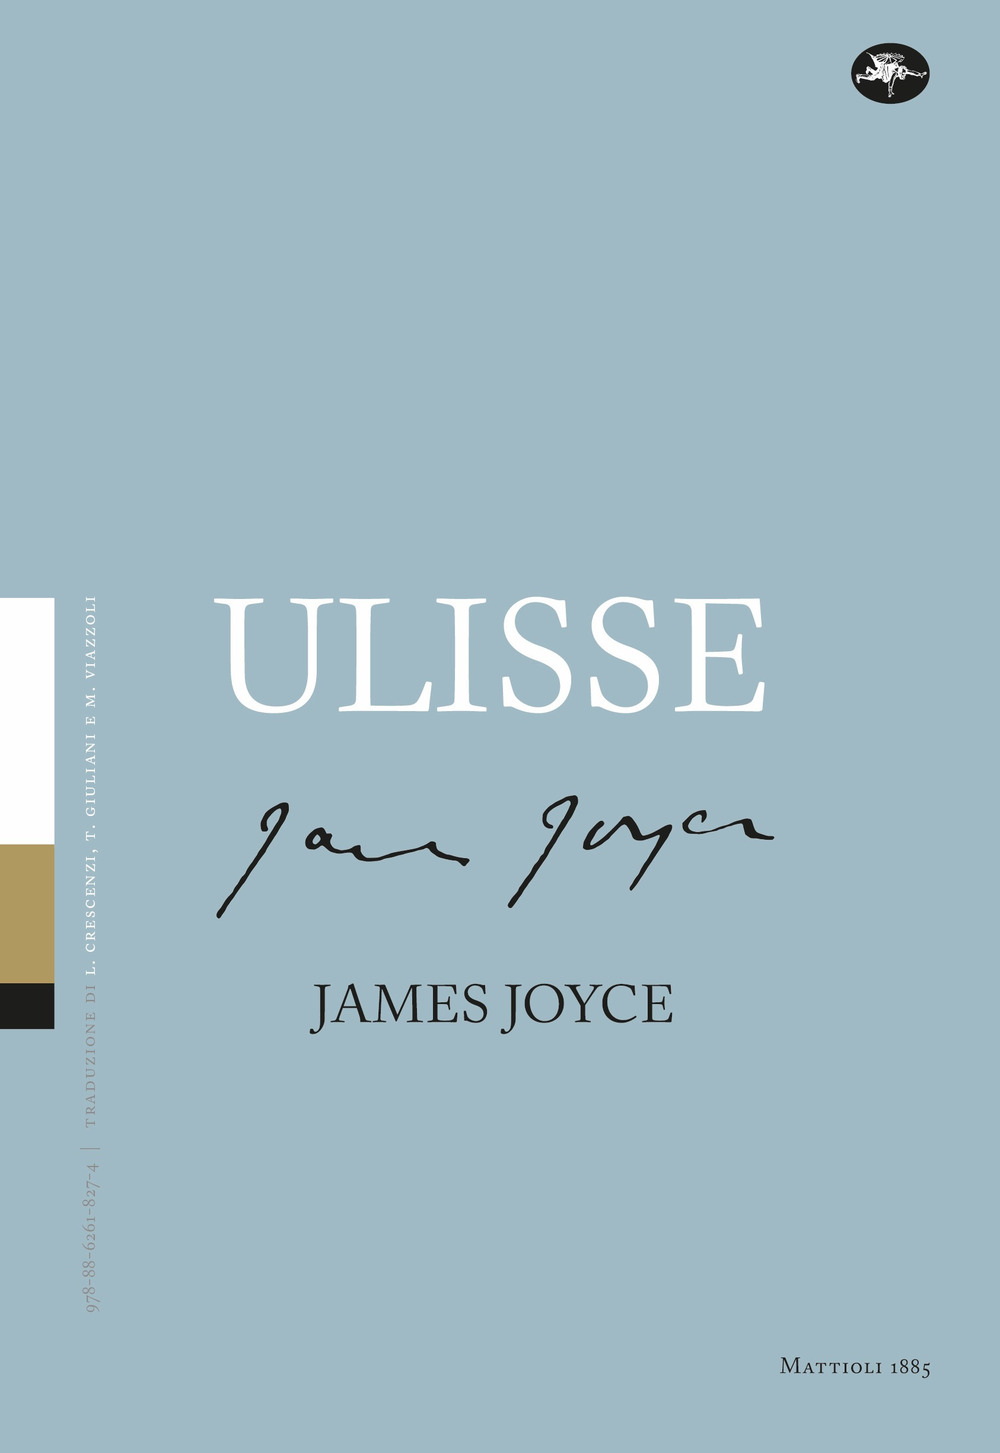 Libri James Joyce - Ulisse NUOVO SIGILLATO, EDIZIONE DEL 25/11/2021 SUBITO DISPONIBILE